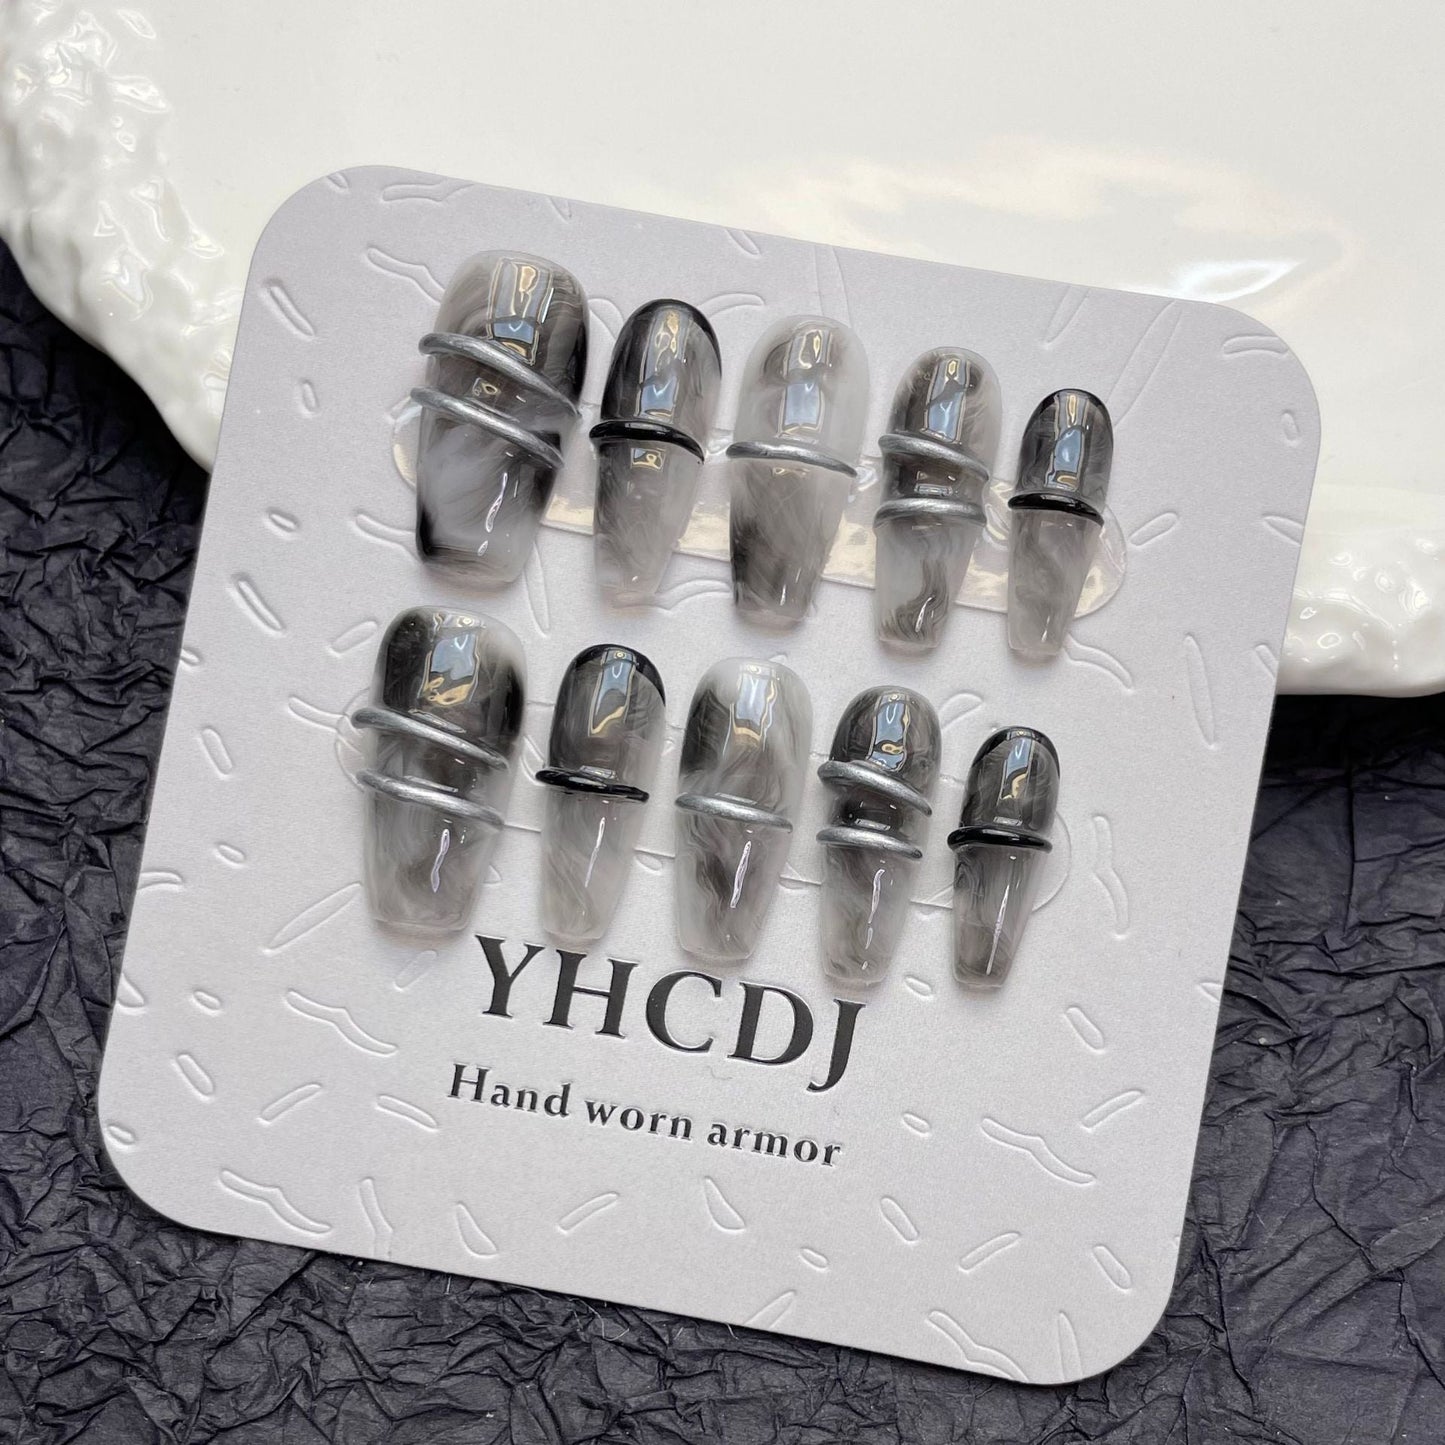 953 Donkergotische stijl press-on-nagels 100% handgemaakte kunstnagels grijs zwart